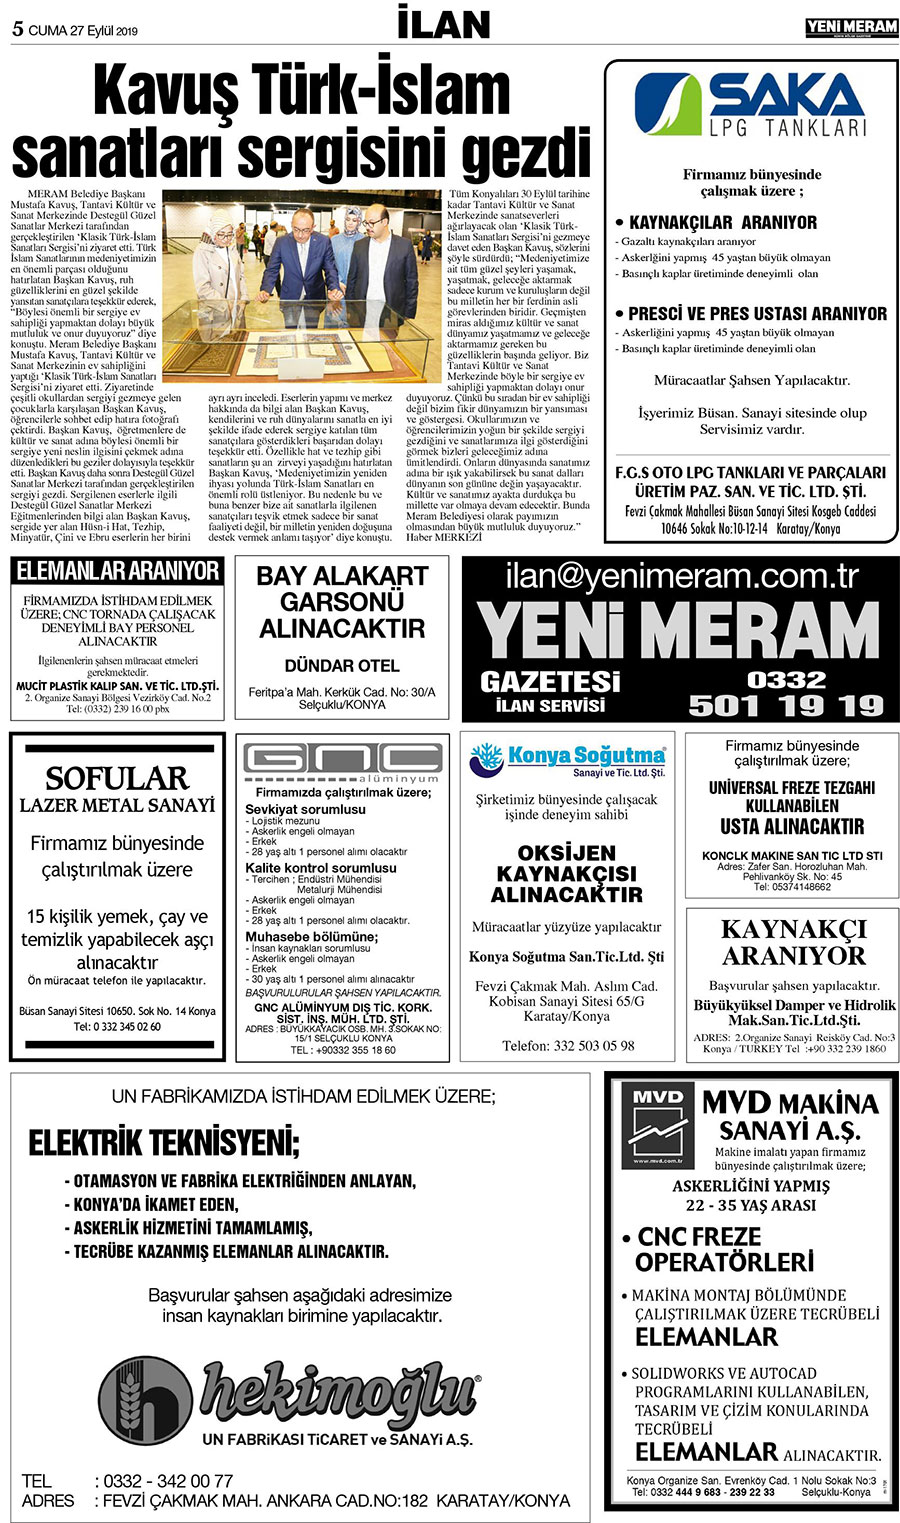 27 Eylül 2019 Yeni Meram Gazetesi